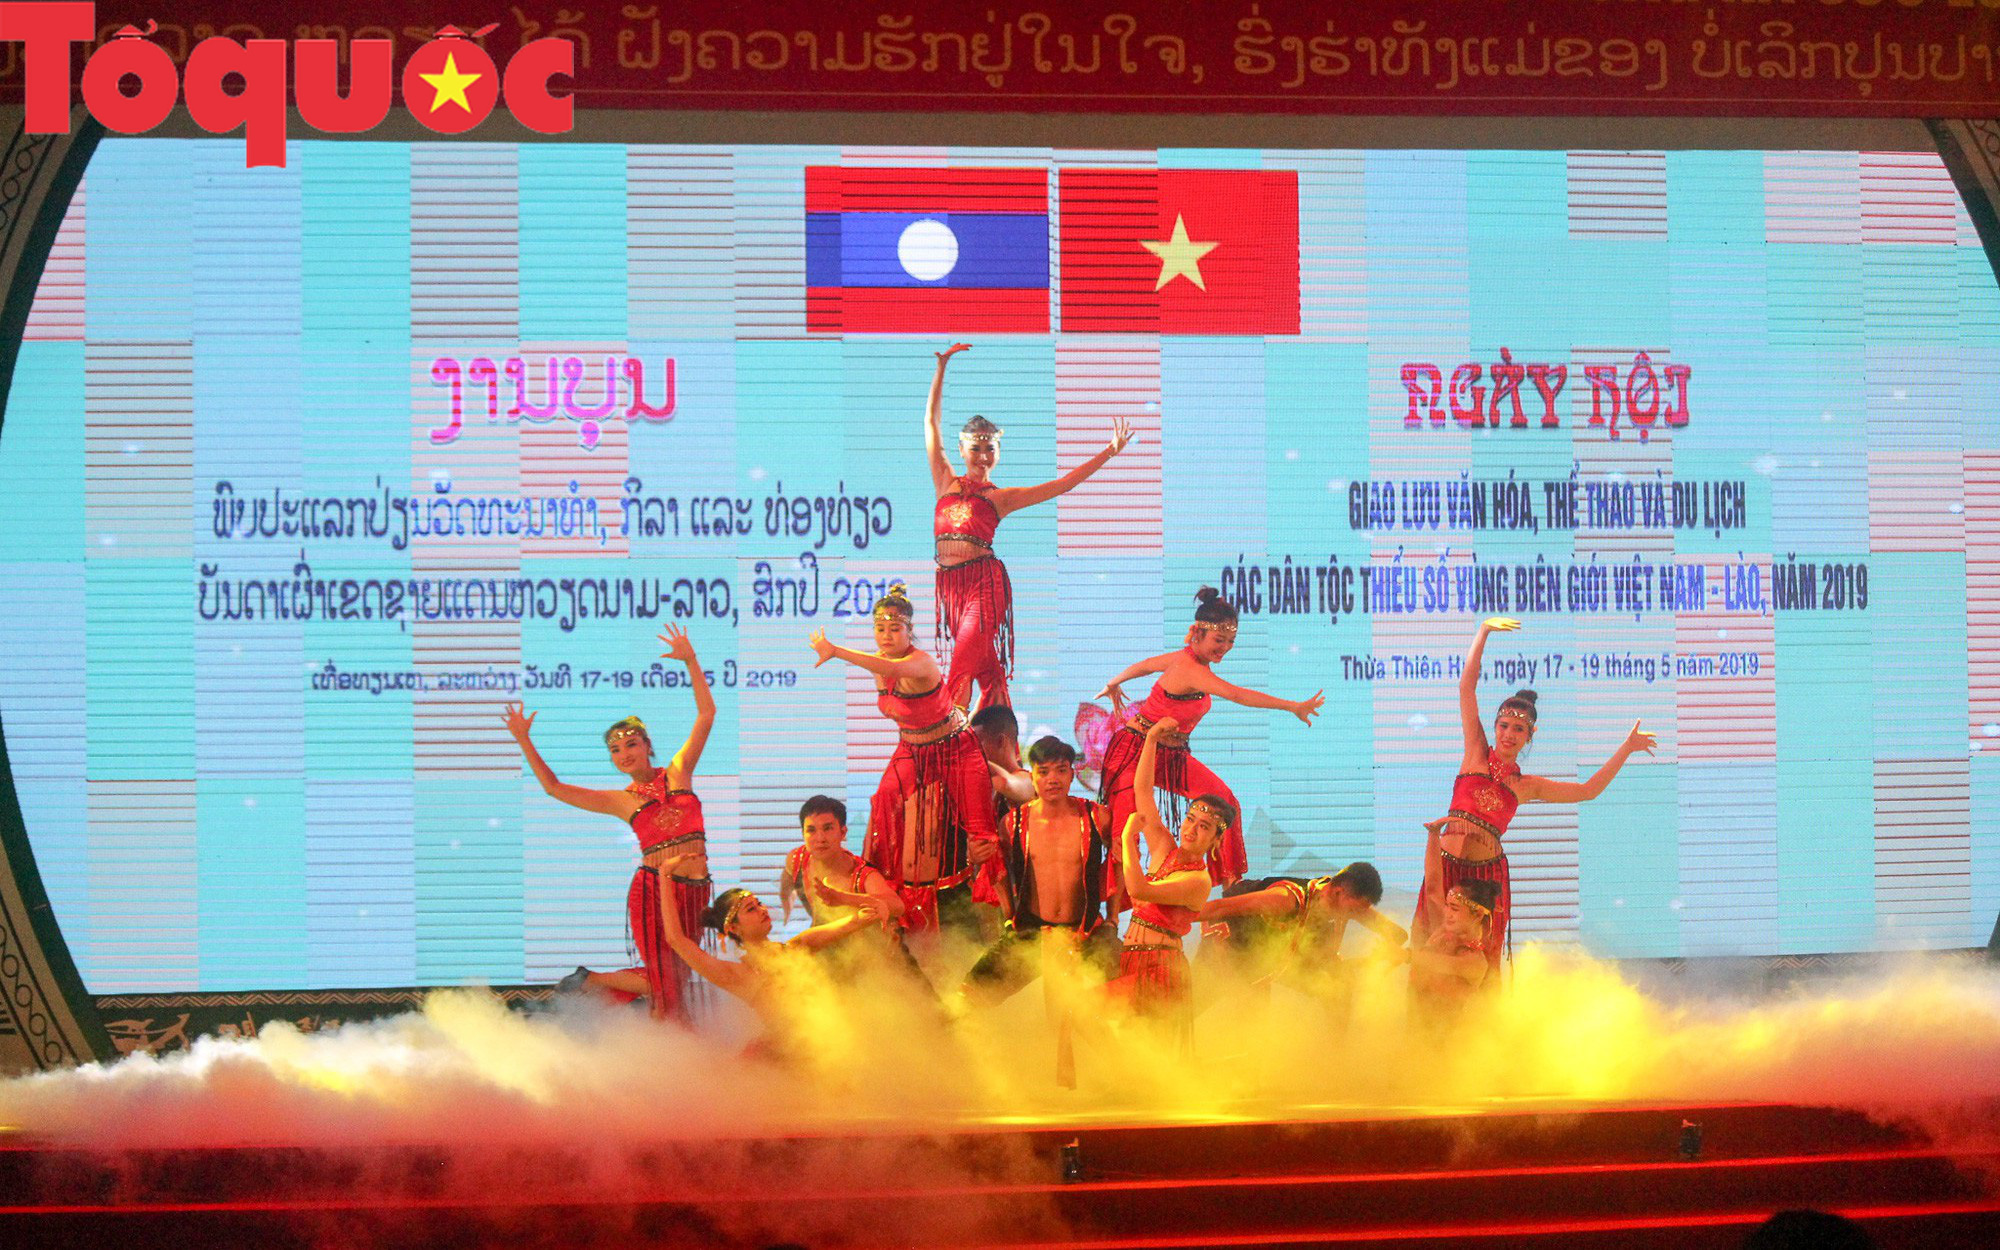 Khai mạc Ngày hội giao lưu văn hóa, thể thao, du lịch các dân tộc biên giới Việt Nam - Lào